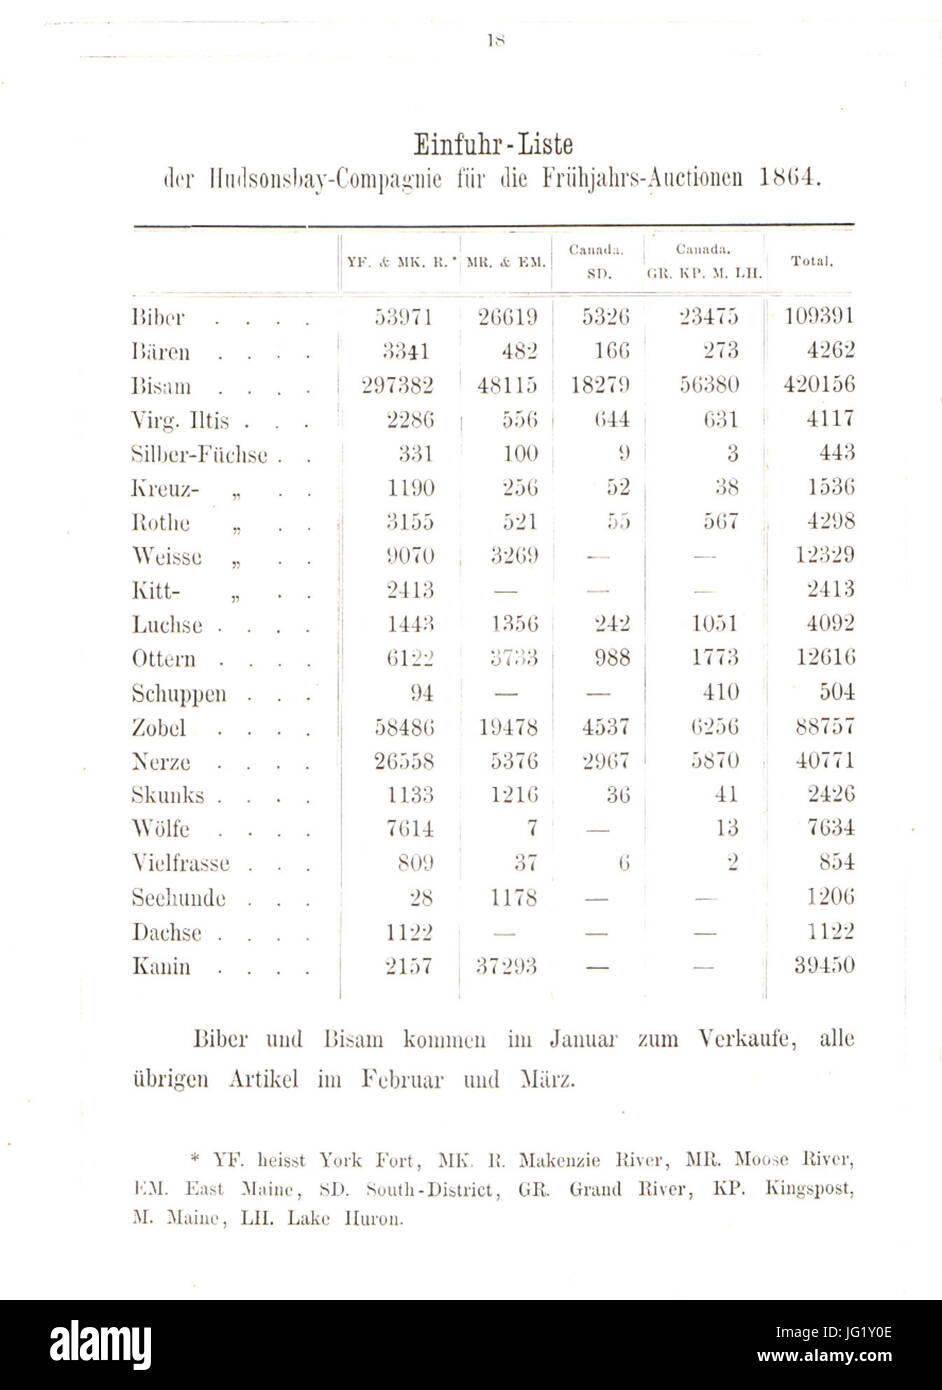 Der Rauchwaarenhandel von Heinrich Lomer, 1864 (Seite 18); Einfuhr-Liste der Hudsonsbay-Compagny für die Frühjahrs-Auctionen 1864 Stock Photo